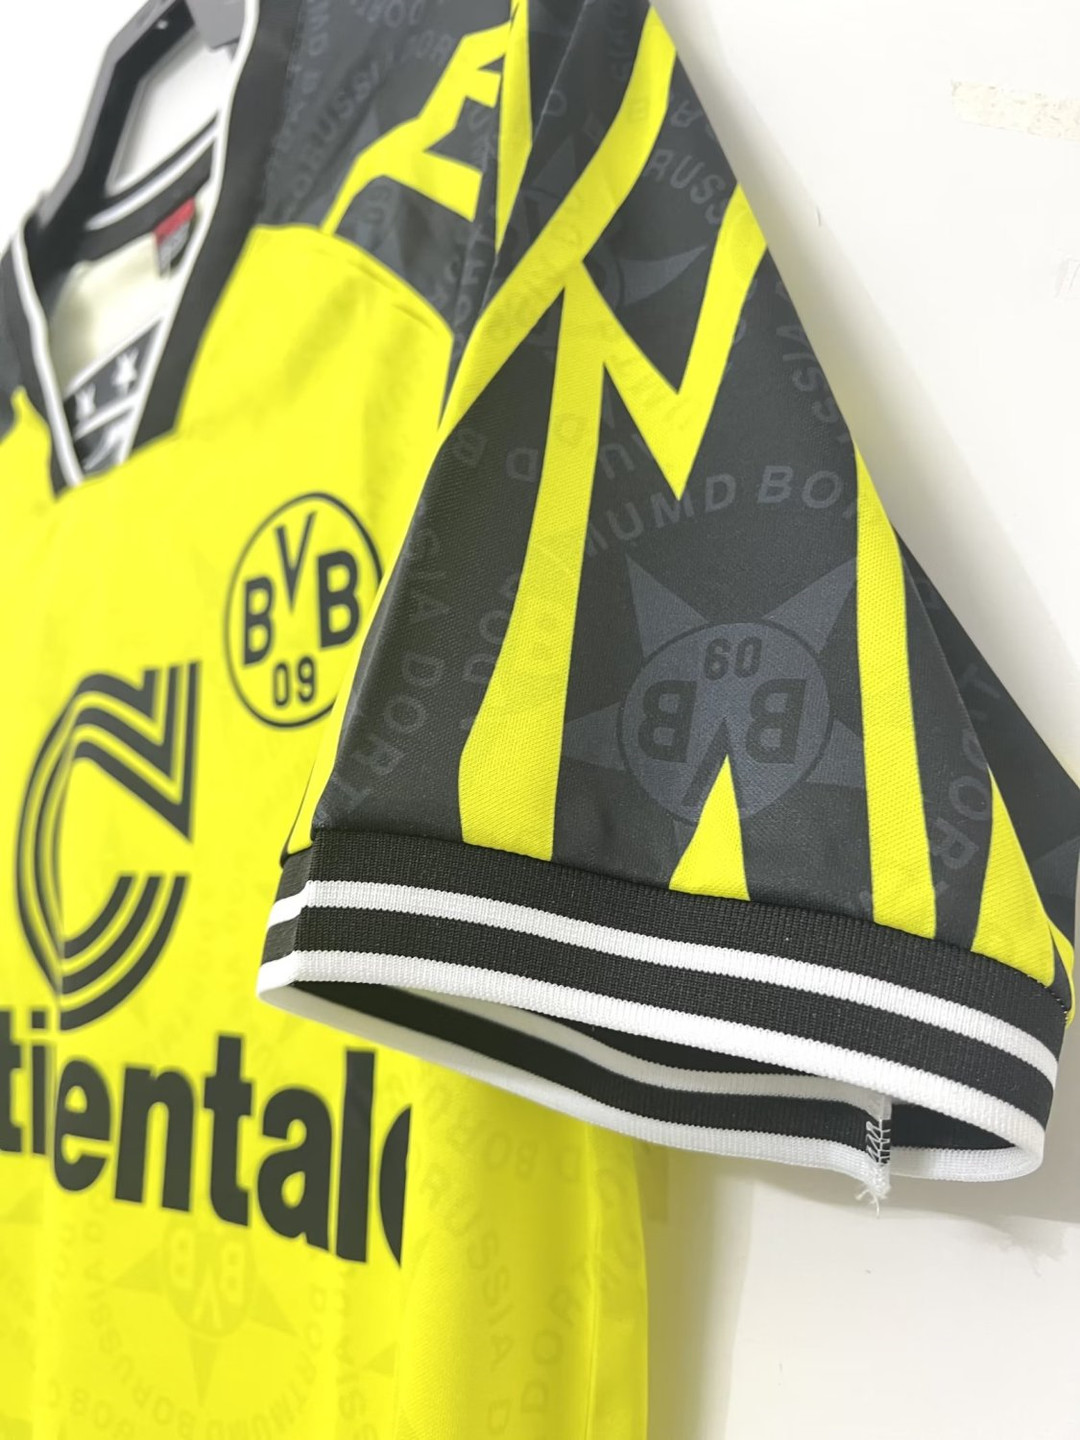 Borussia Dortmund Soccer Jersey Replica Retro Home 1994/95 Mens